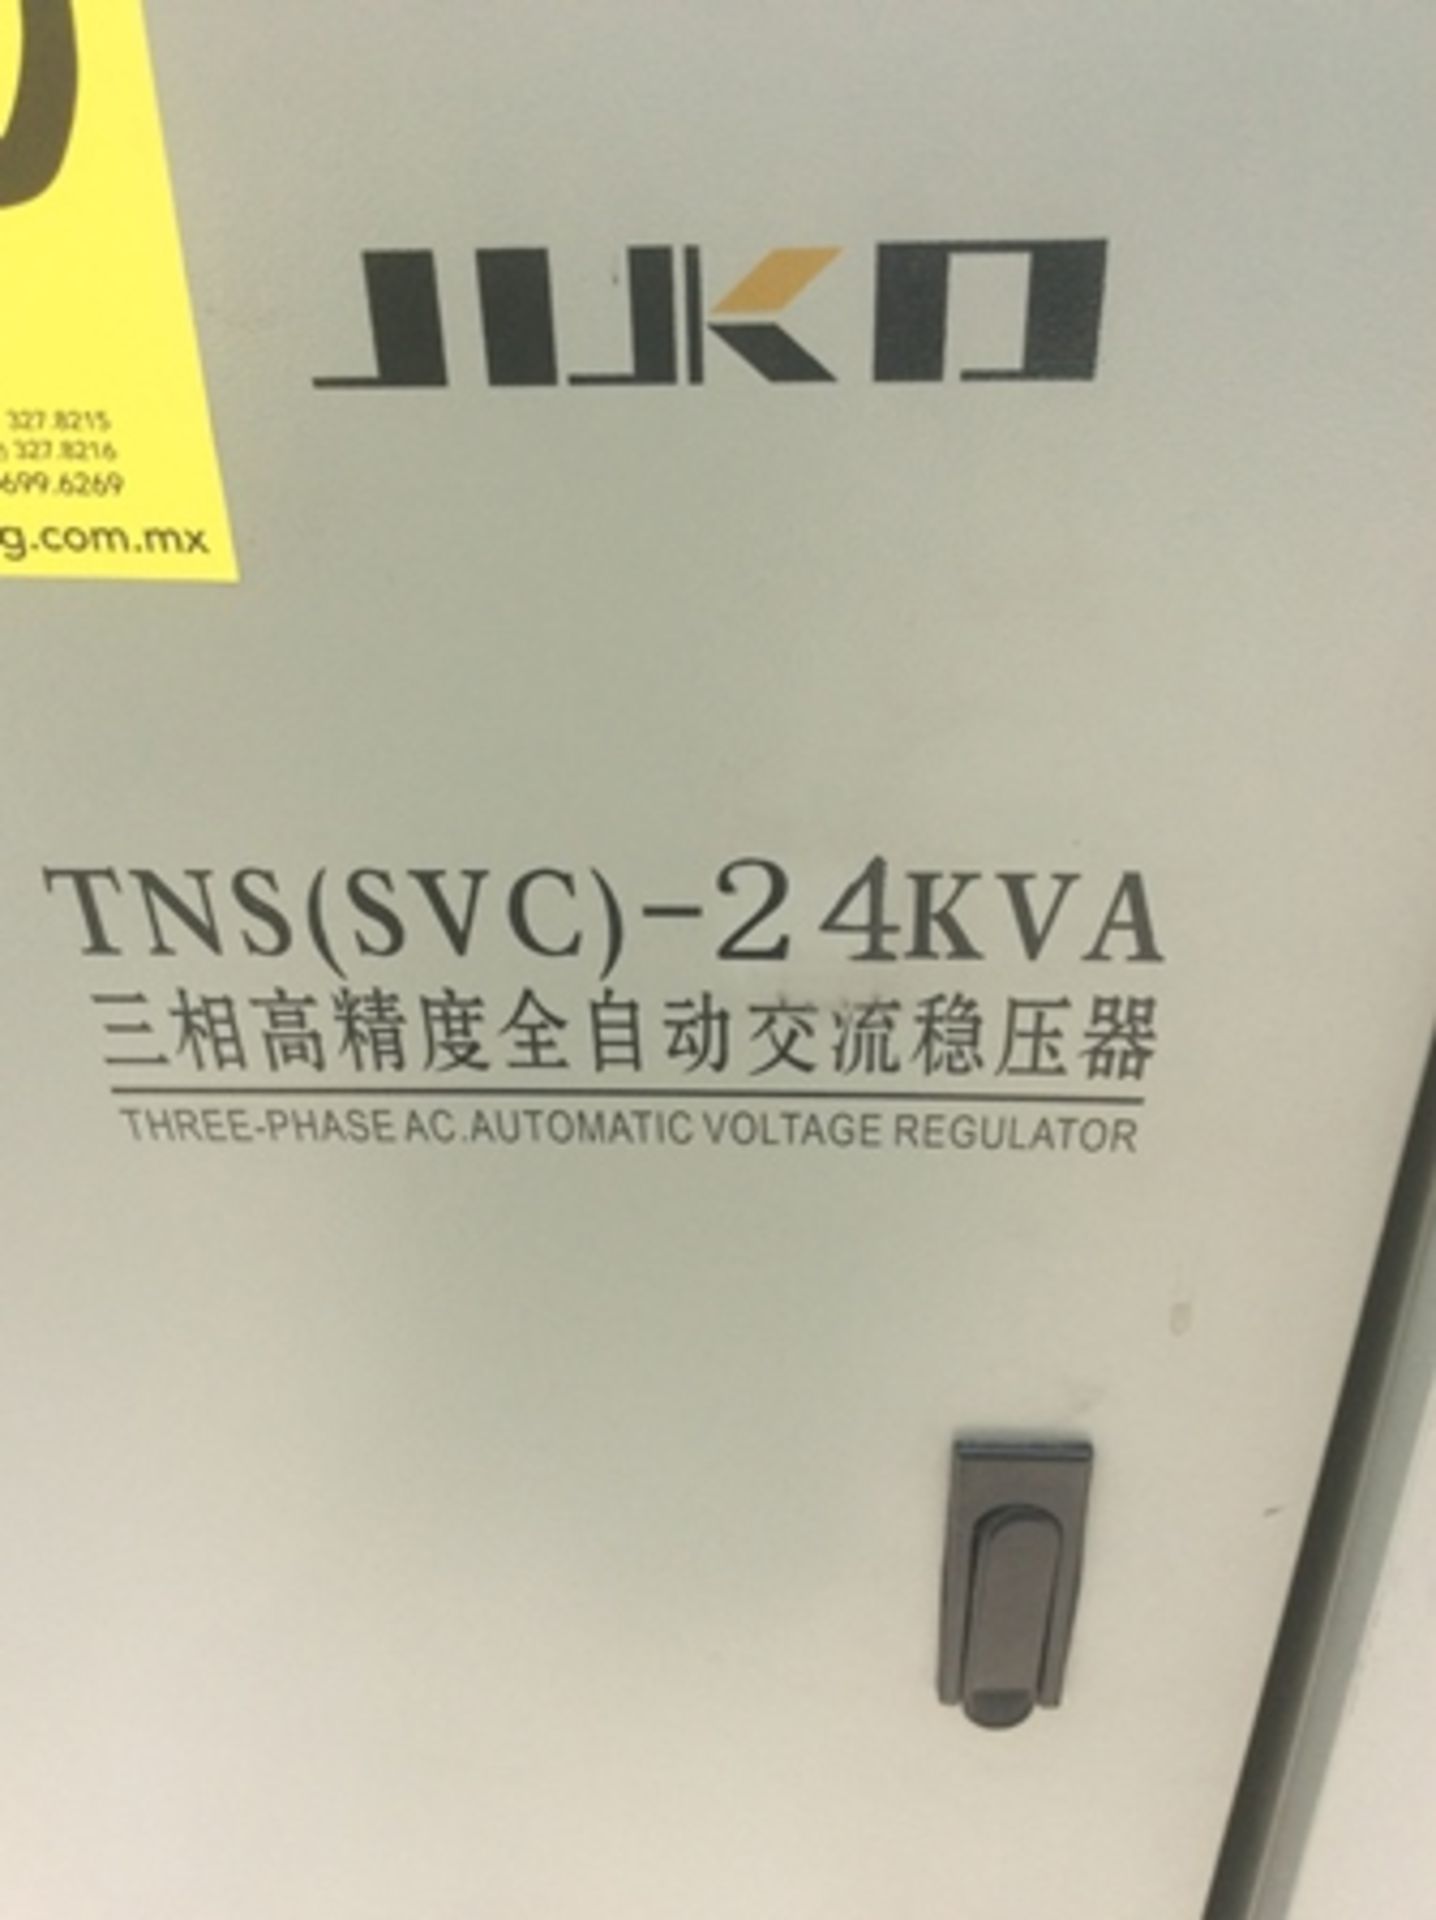 4 reguladores de voltaje marca: jijko modelo: tns(svc)-24kva capacidad: 24kva y colector de polvo s - Image 8 of 8